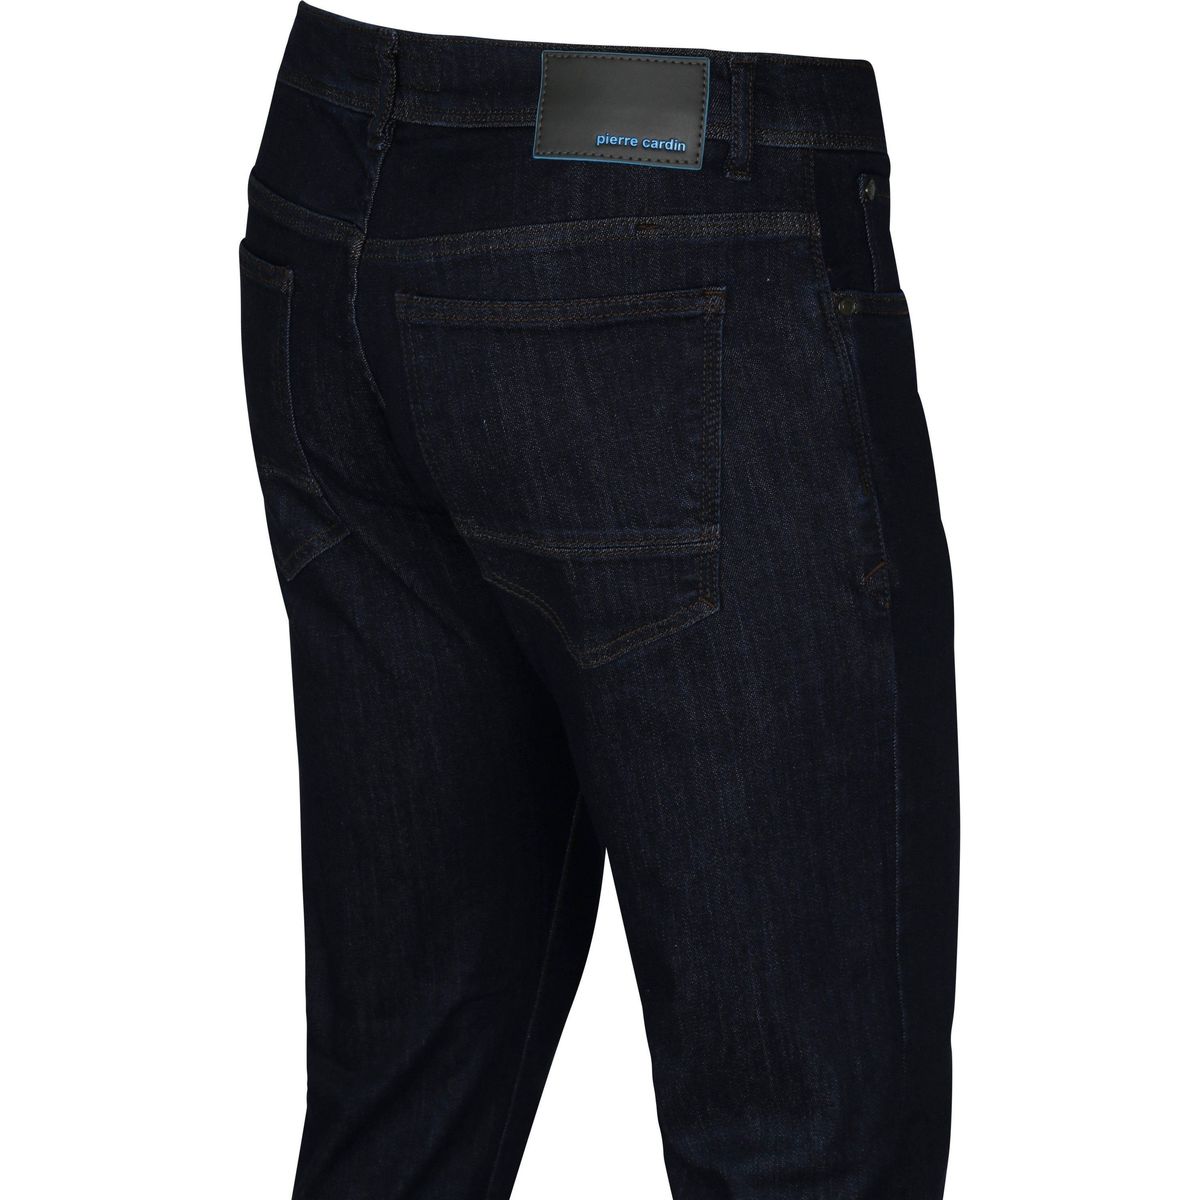 Pierre Cardin Bleu 5 Pocket Jeans Antibes Bleu Foncé FjjNnS7H